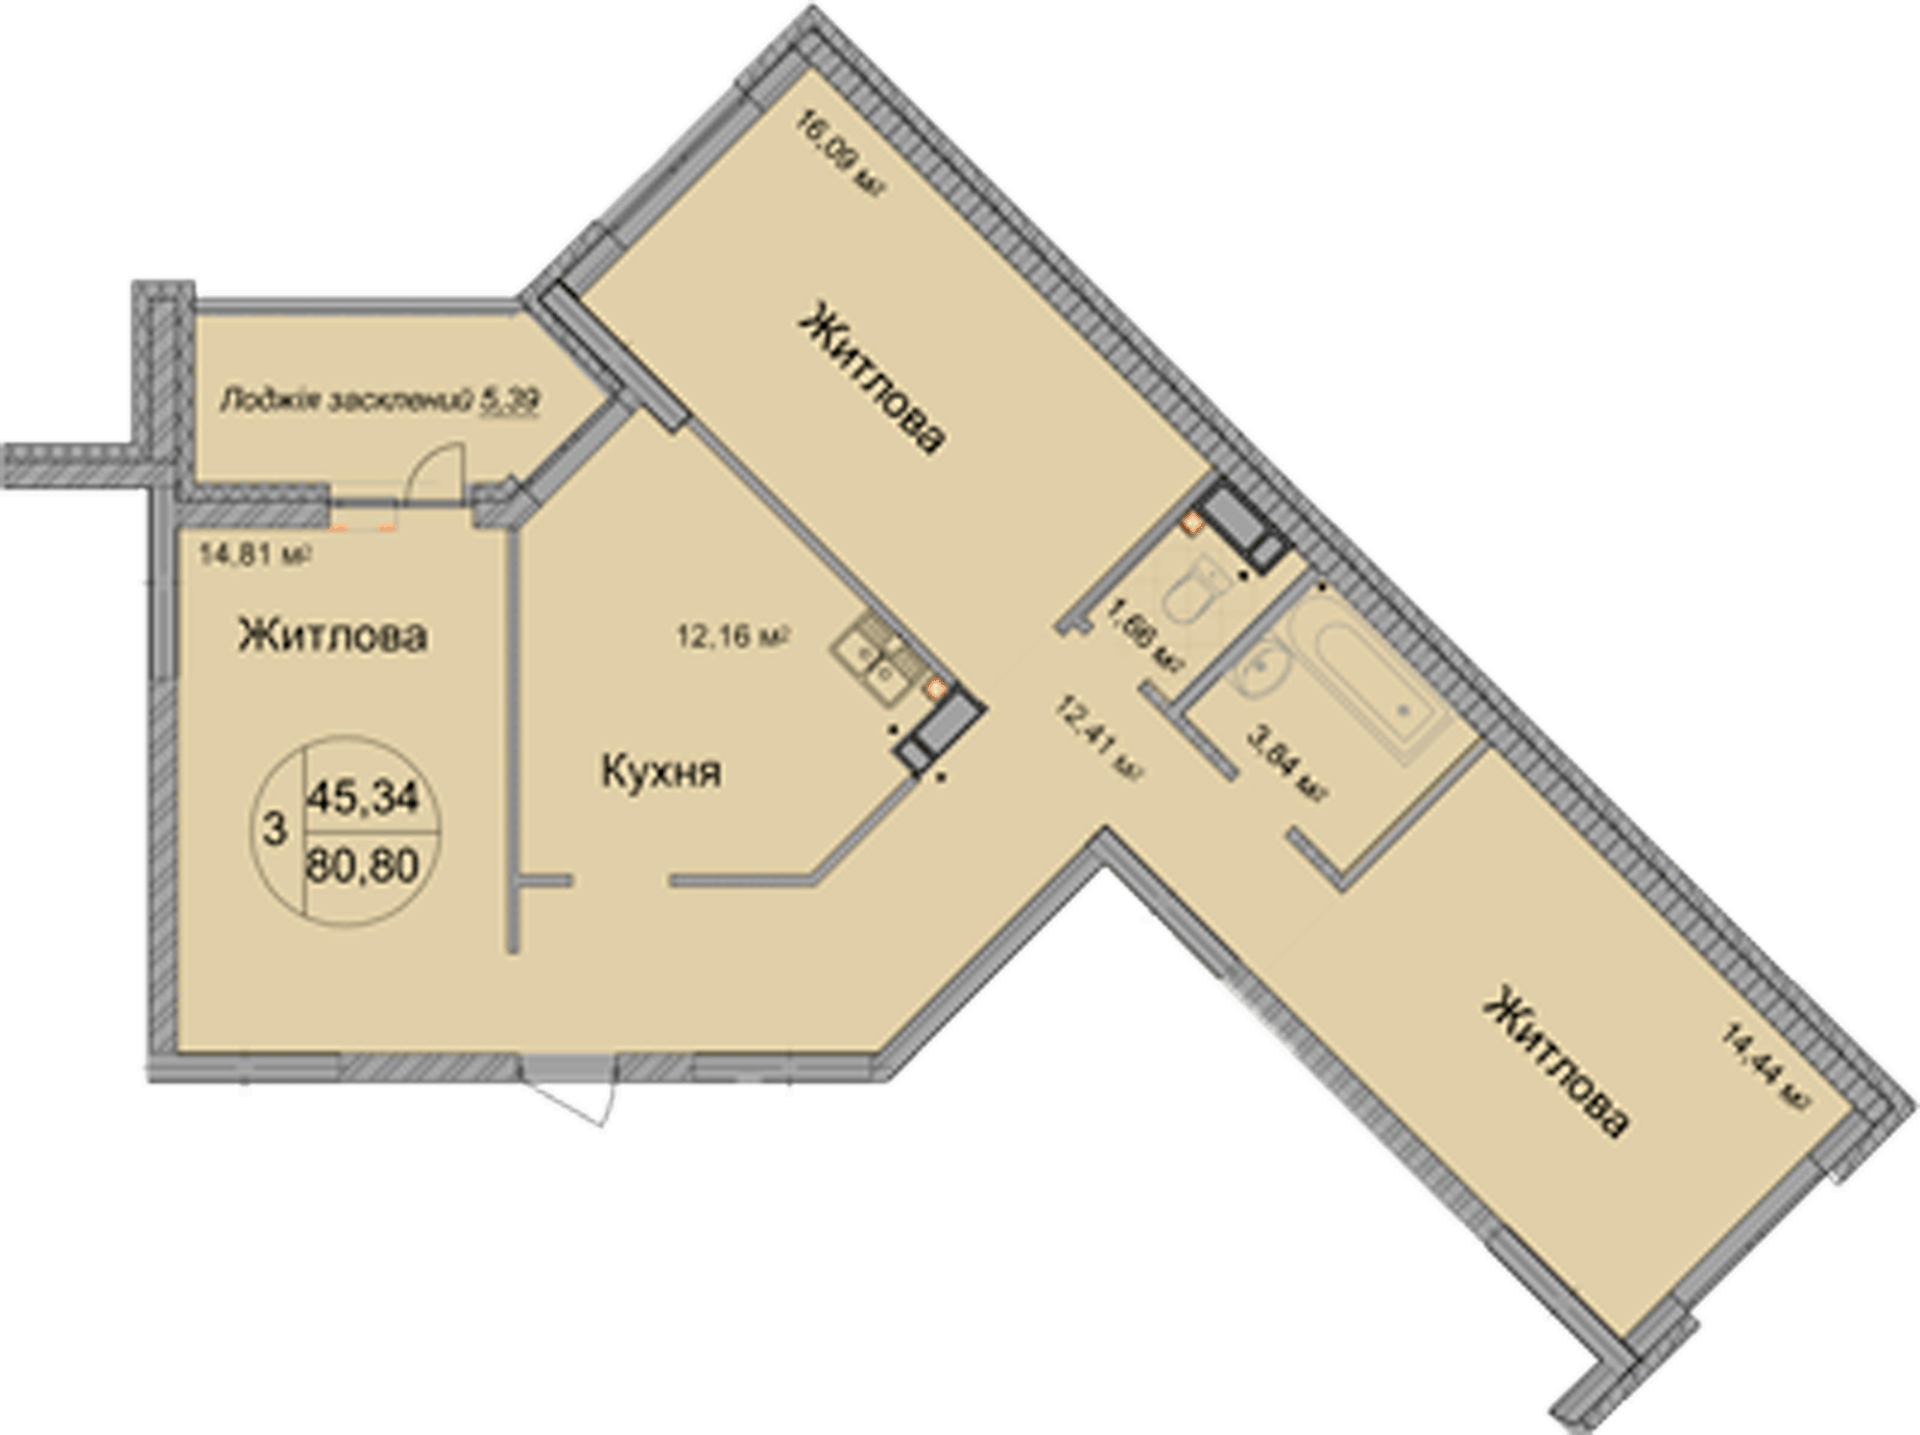 3-кімнатна 80.8 м² в ЖК Святобор від 33 500 грн/м², Київ